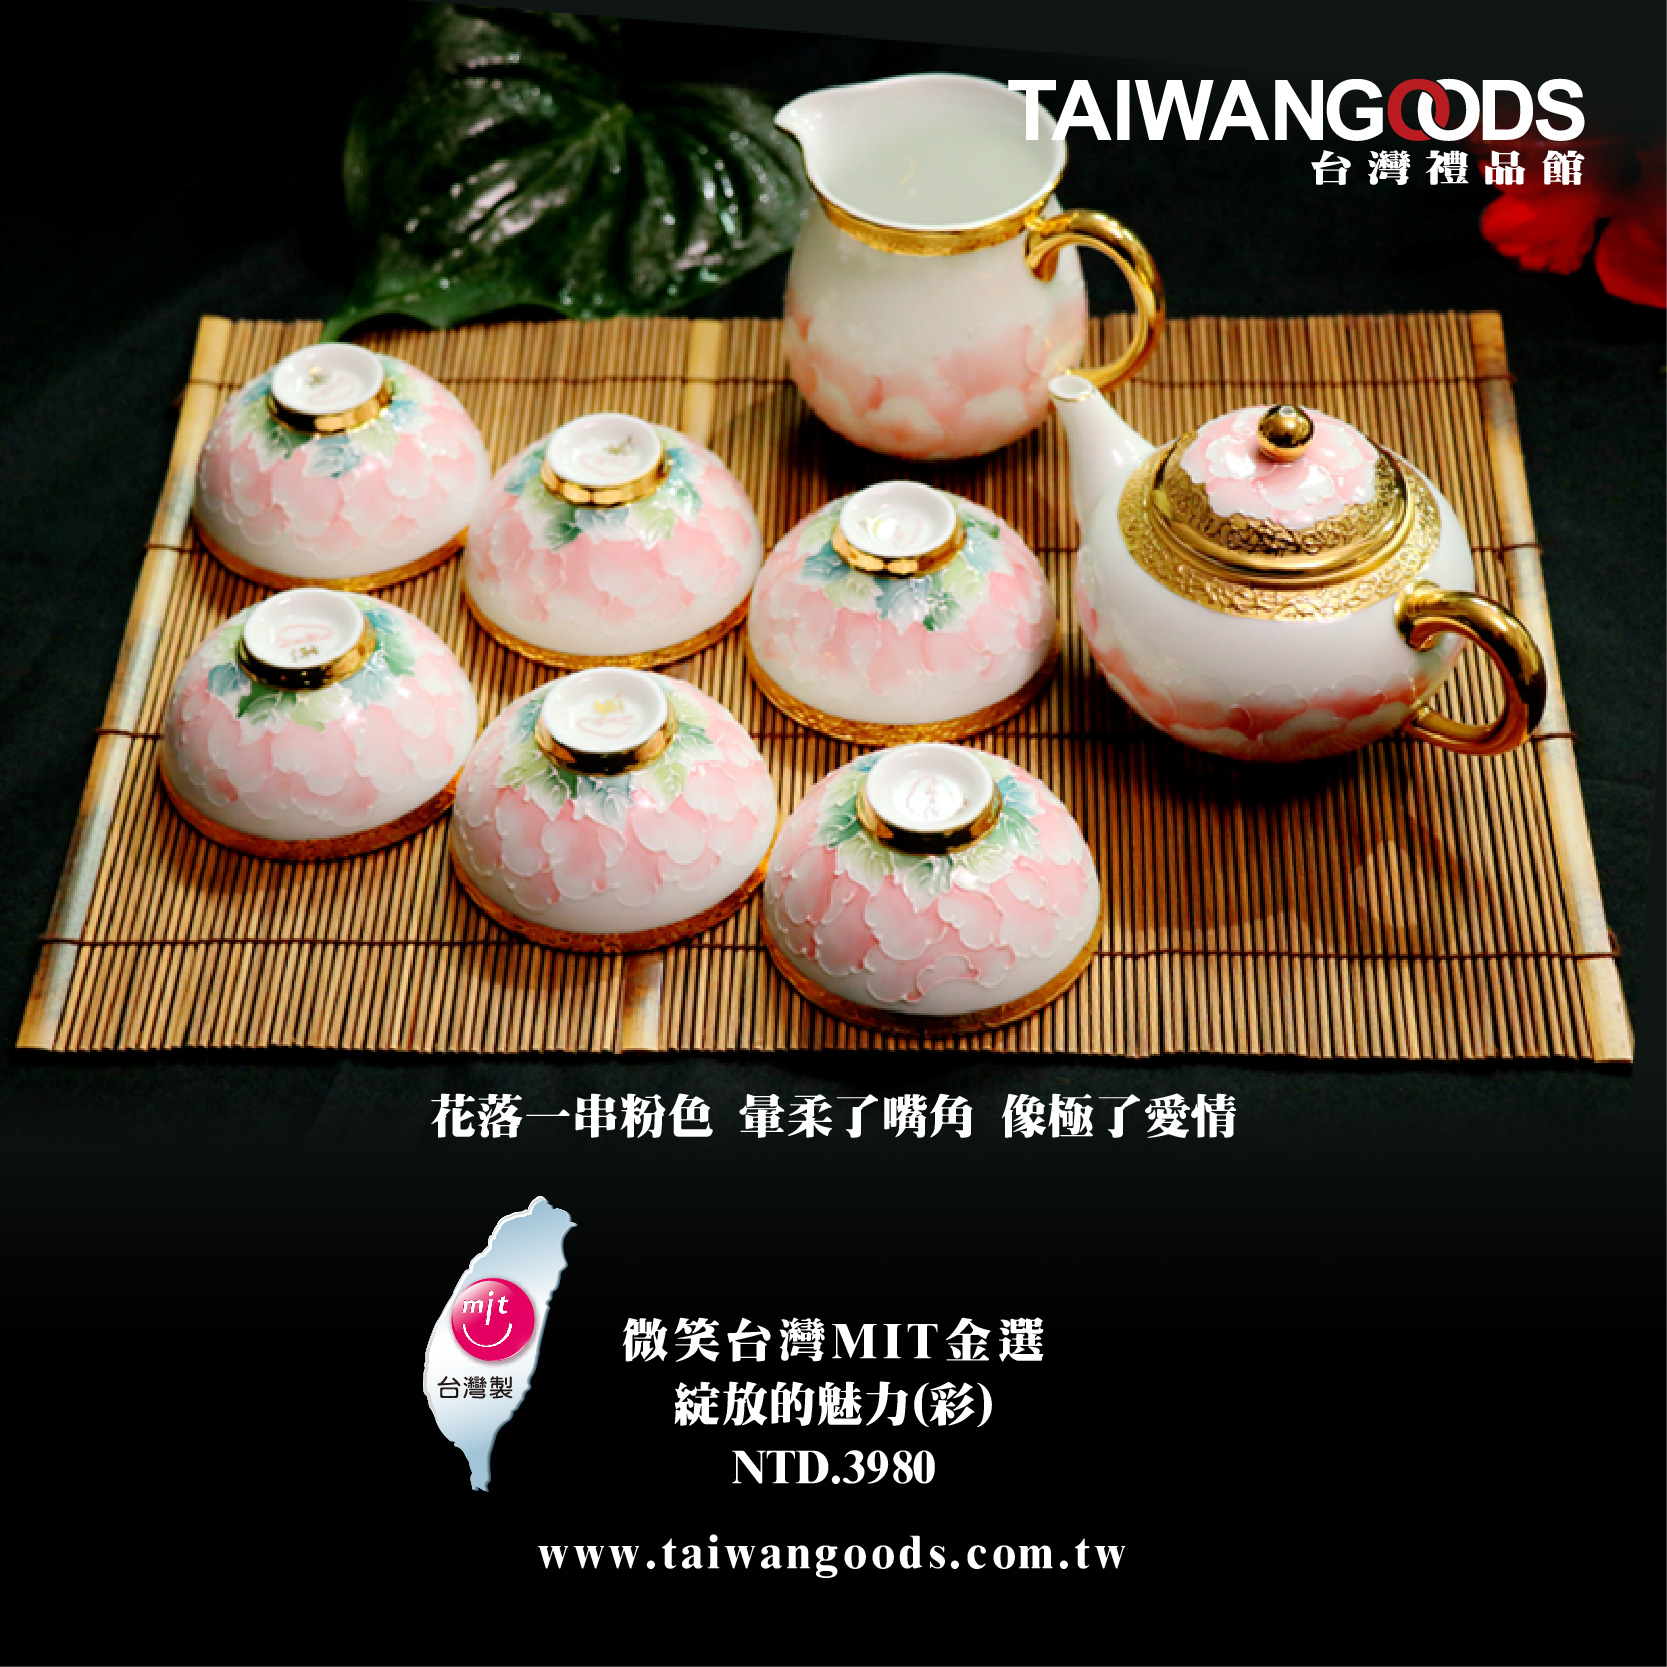 【微笑台灣MIT認證金選】法華彩 綻放的魅力(彩) Taiwan gilding porcelain craft